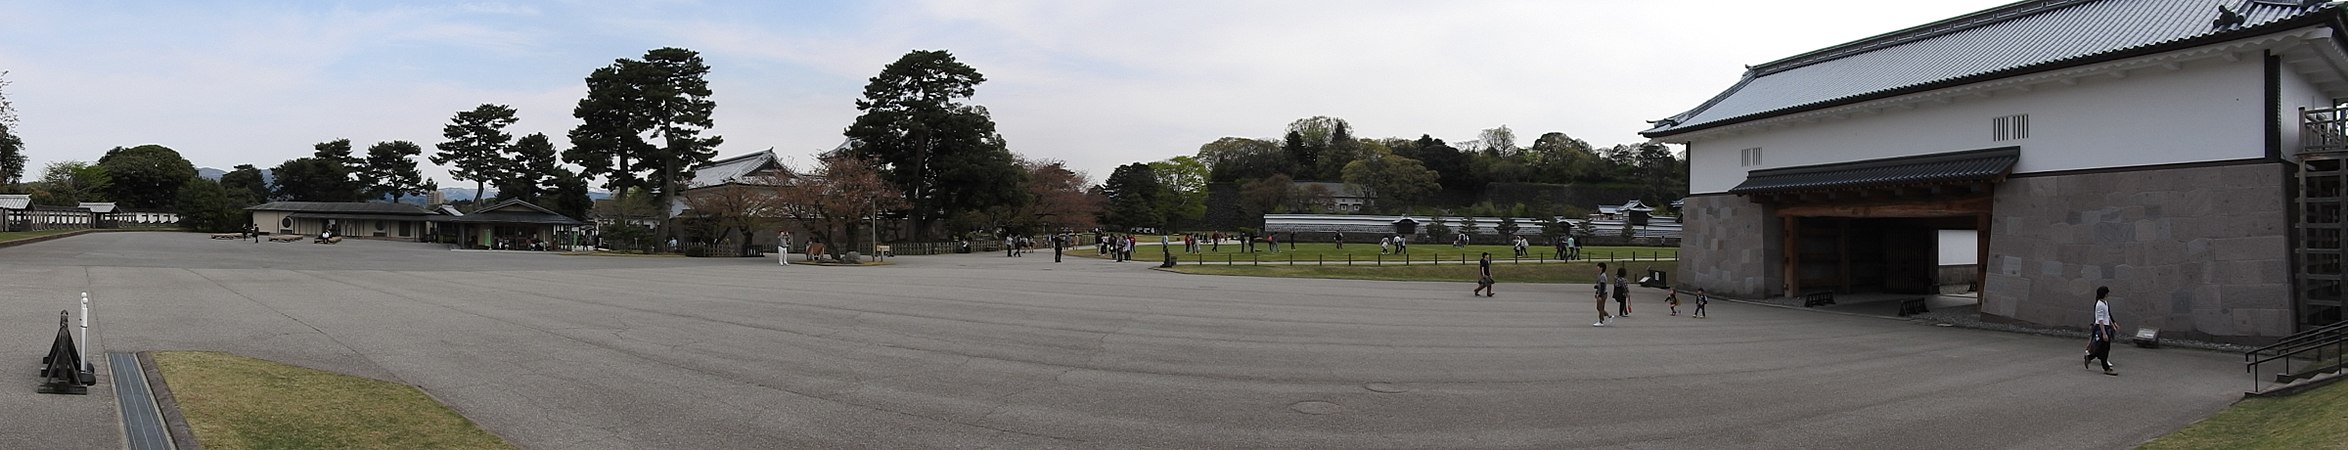 English: Panorama of Kanazawa Castle